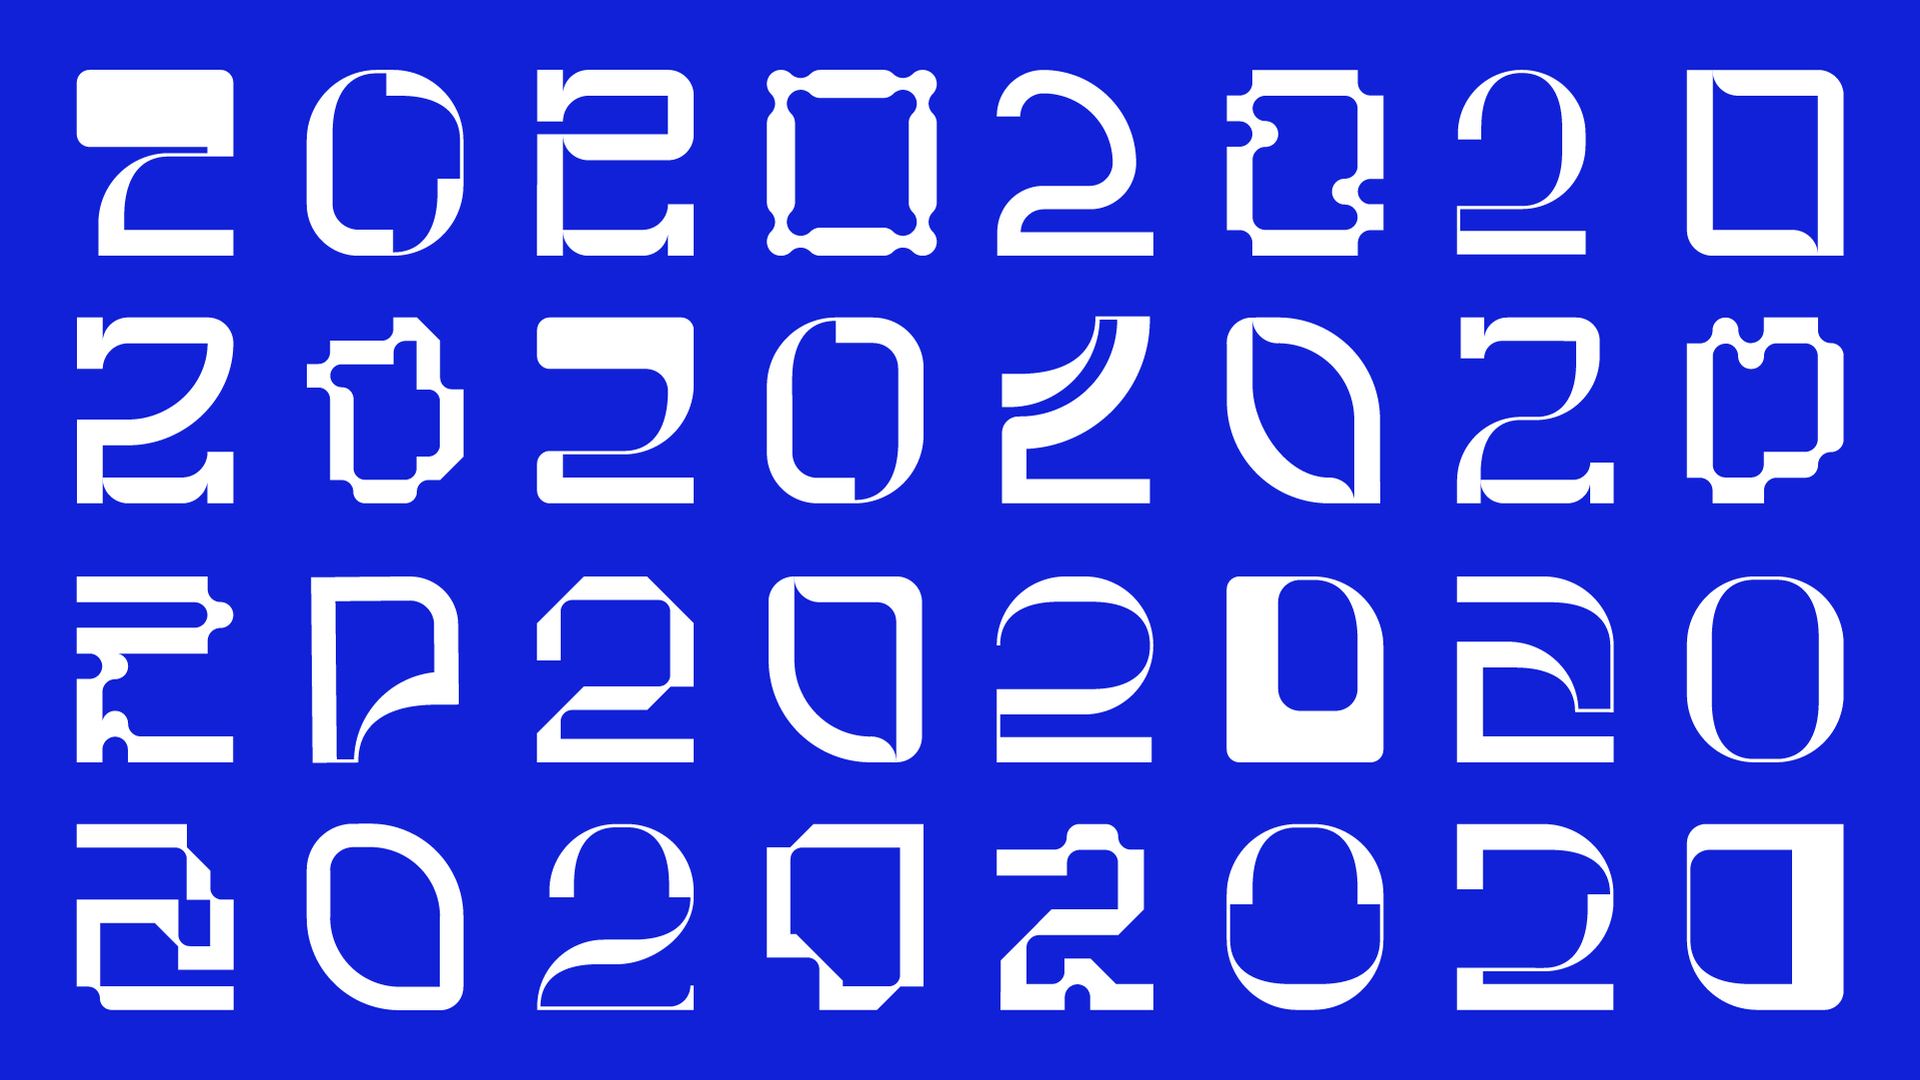 Glyph set of RCA2020 Logos